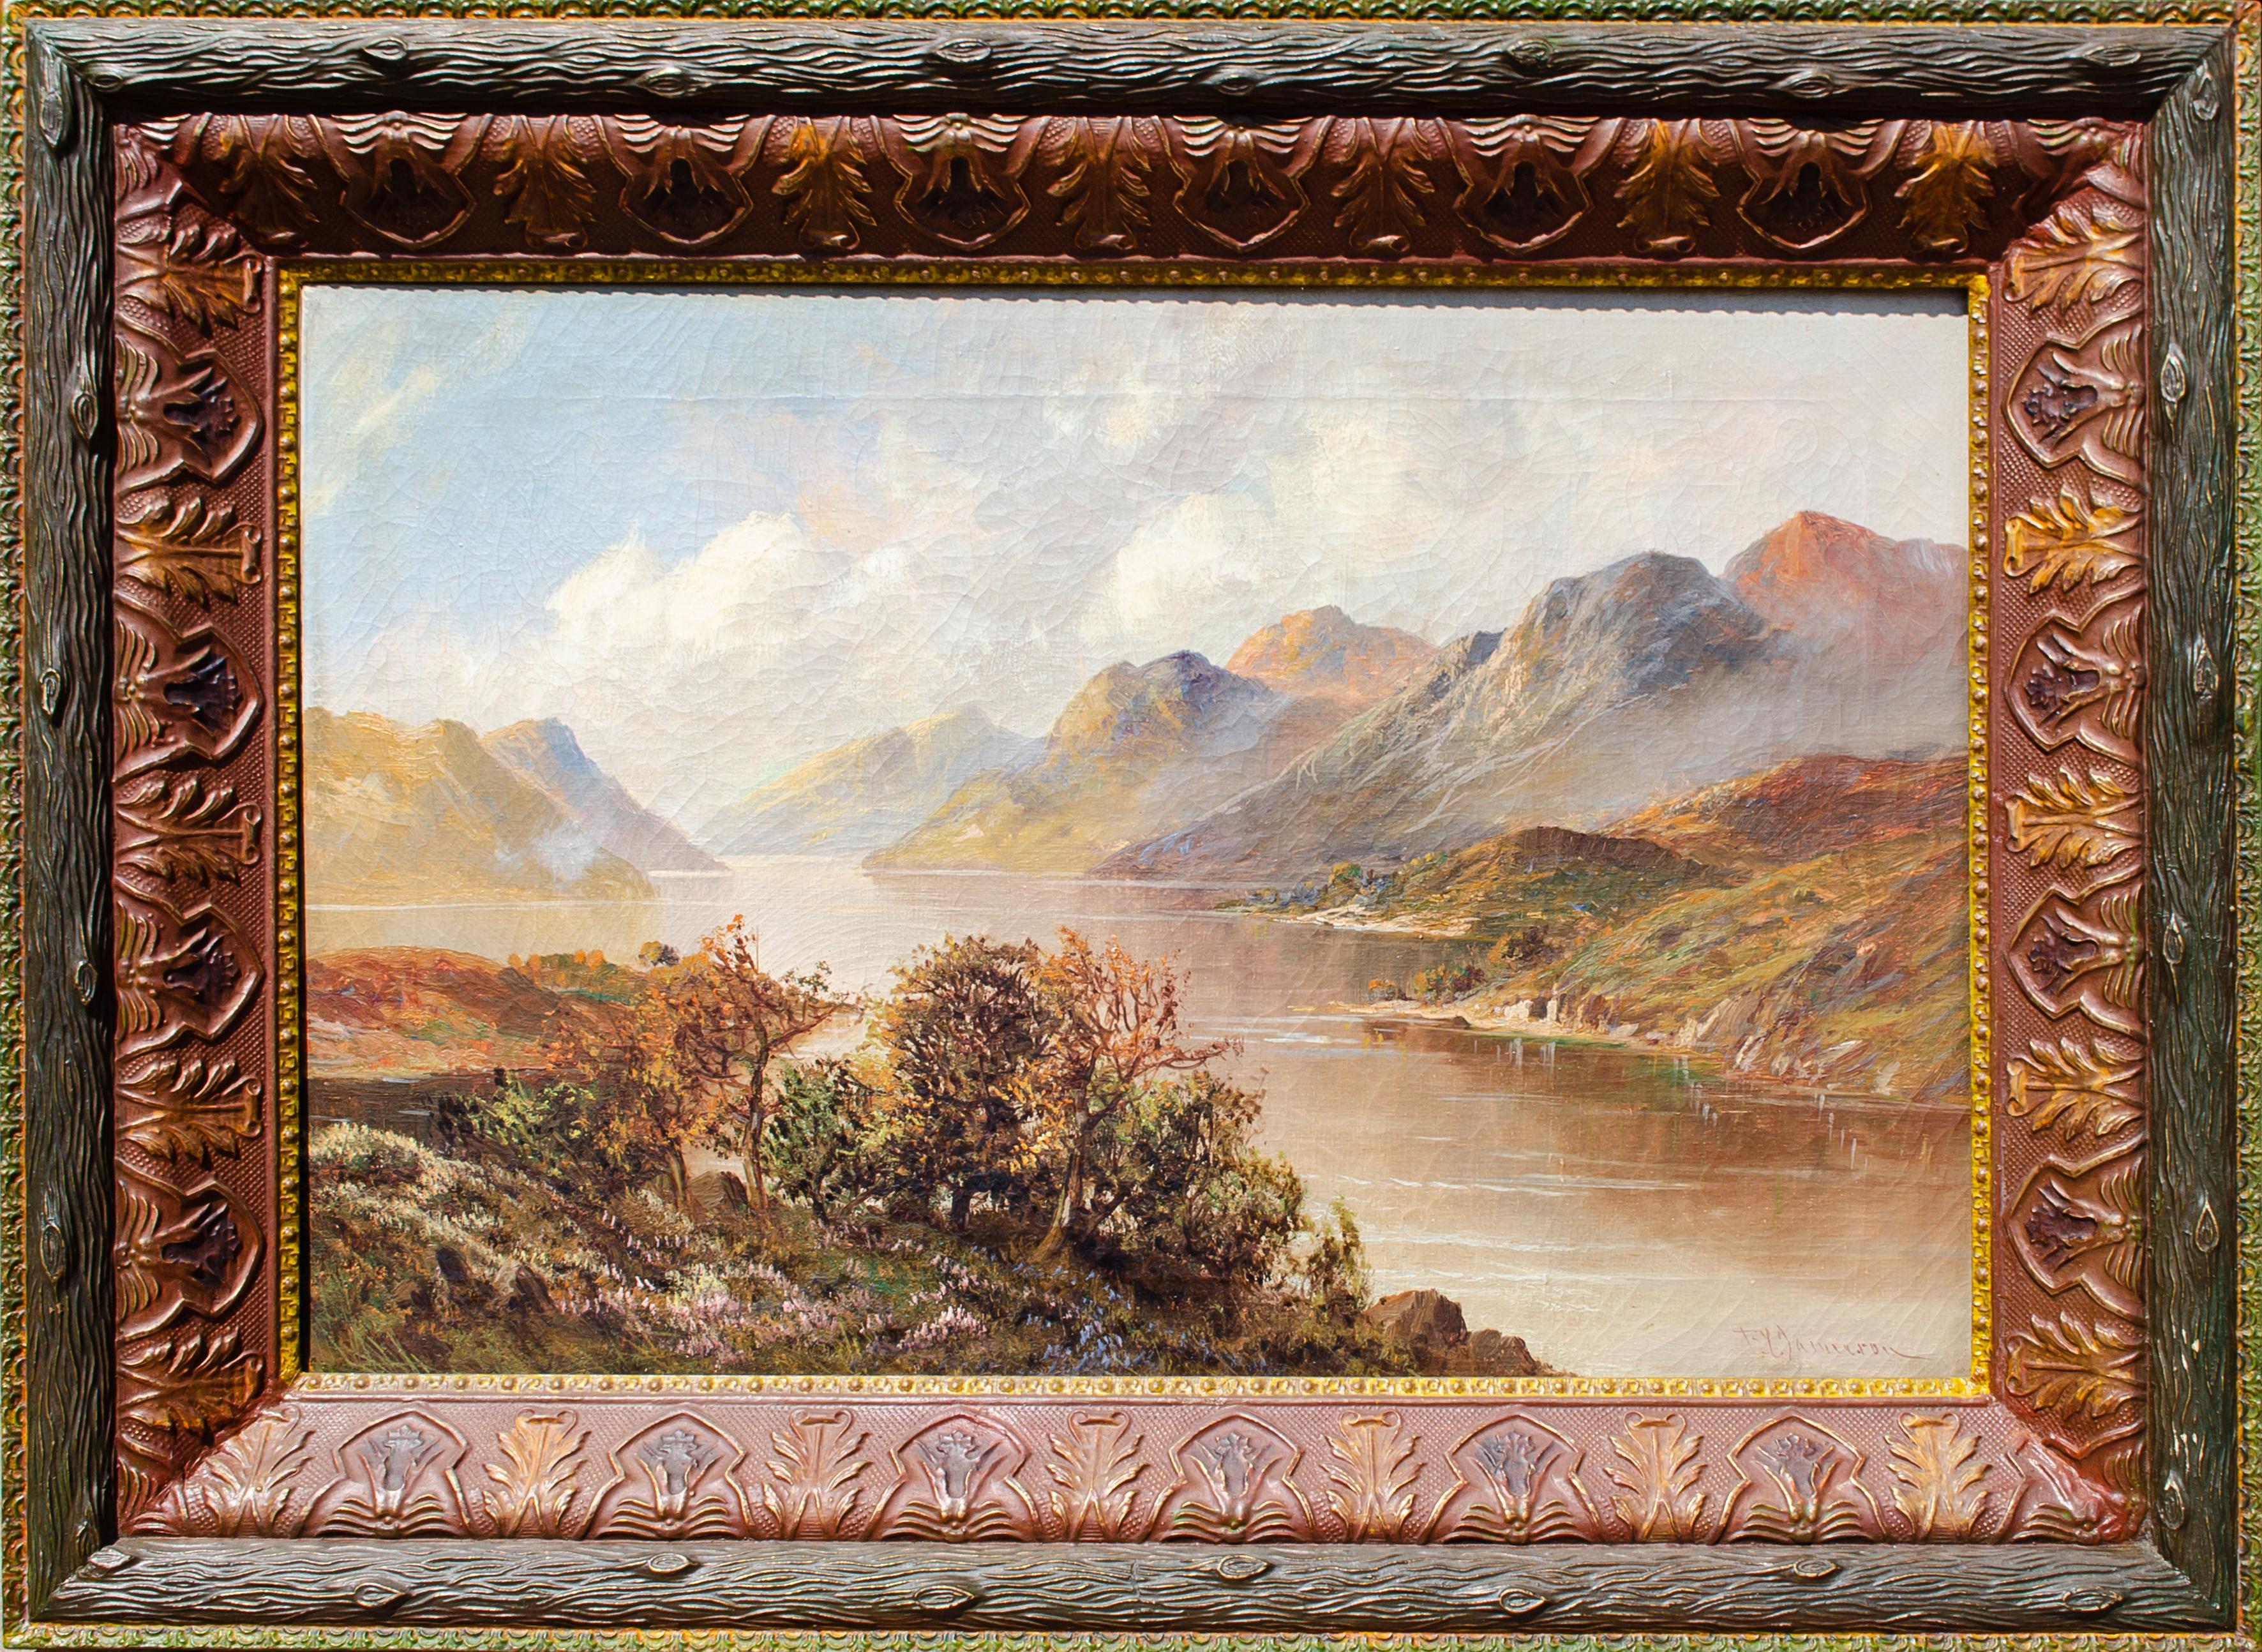 Landscape Painting Unknown - Peinture de style de l'Hudson River School, vers 1900